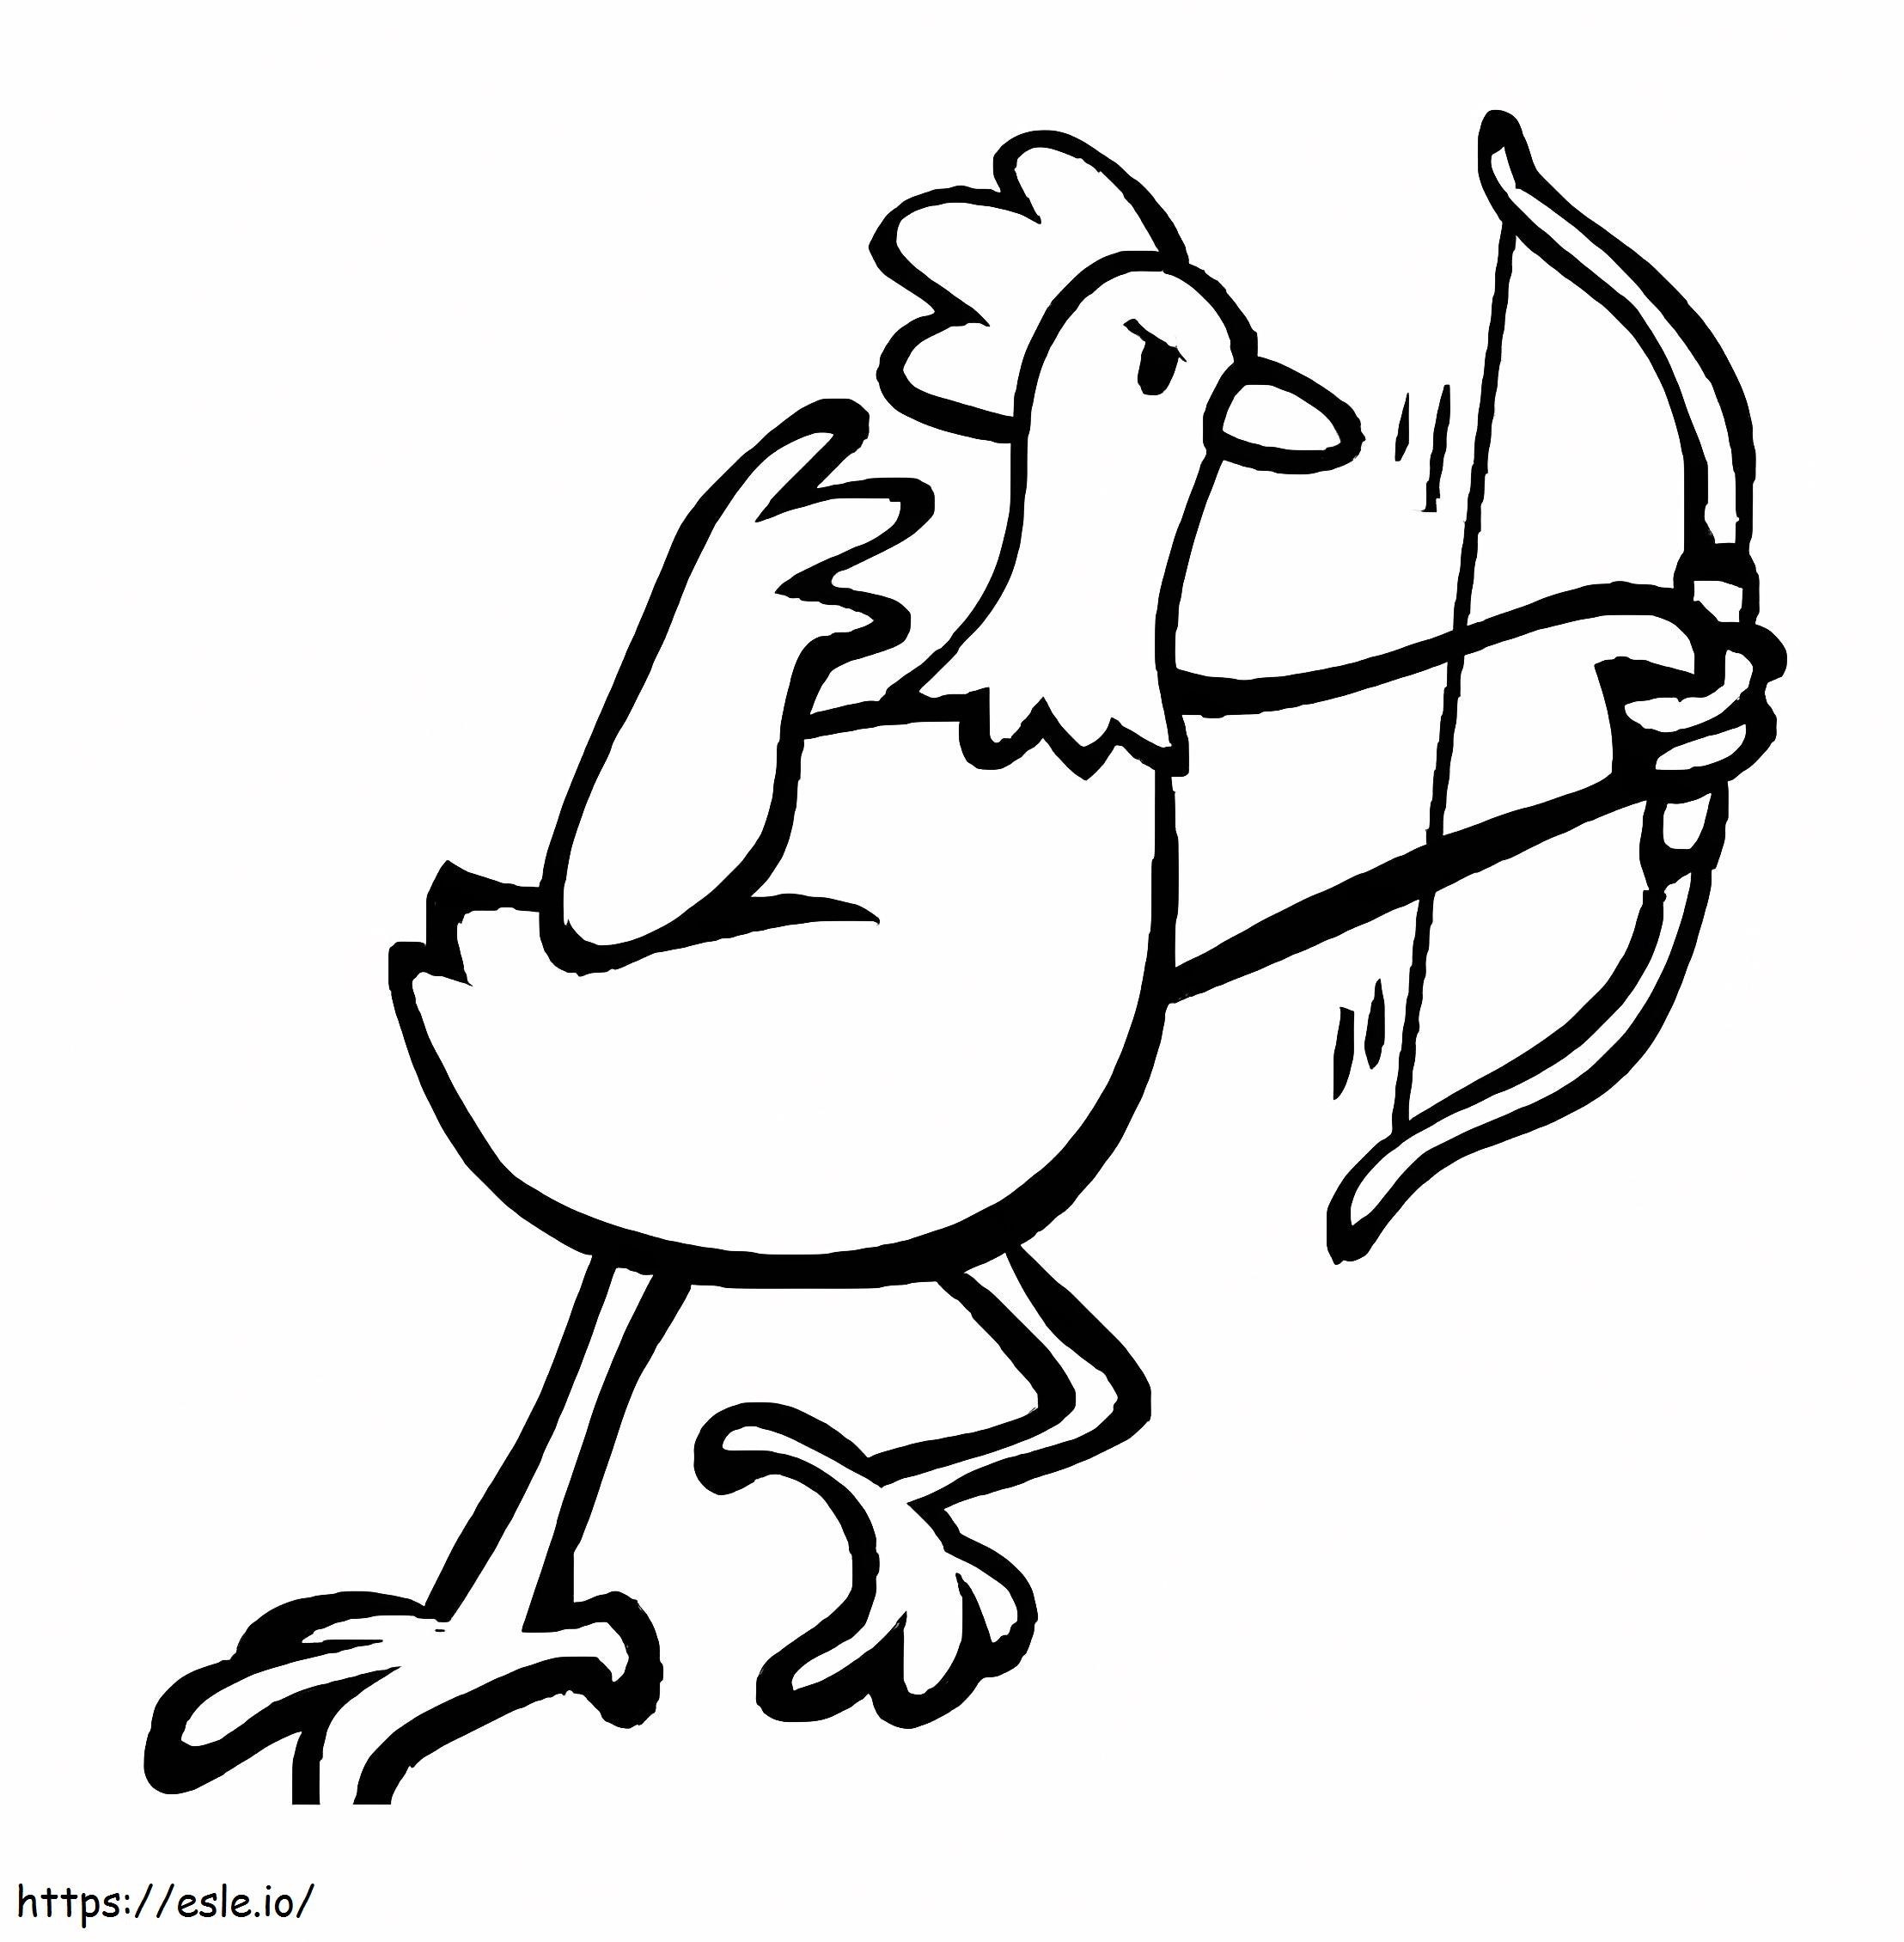 Huhn-Bogenschießen-Zeichnung ausmalbilder